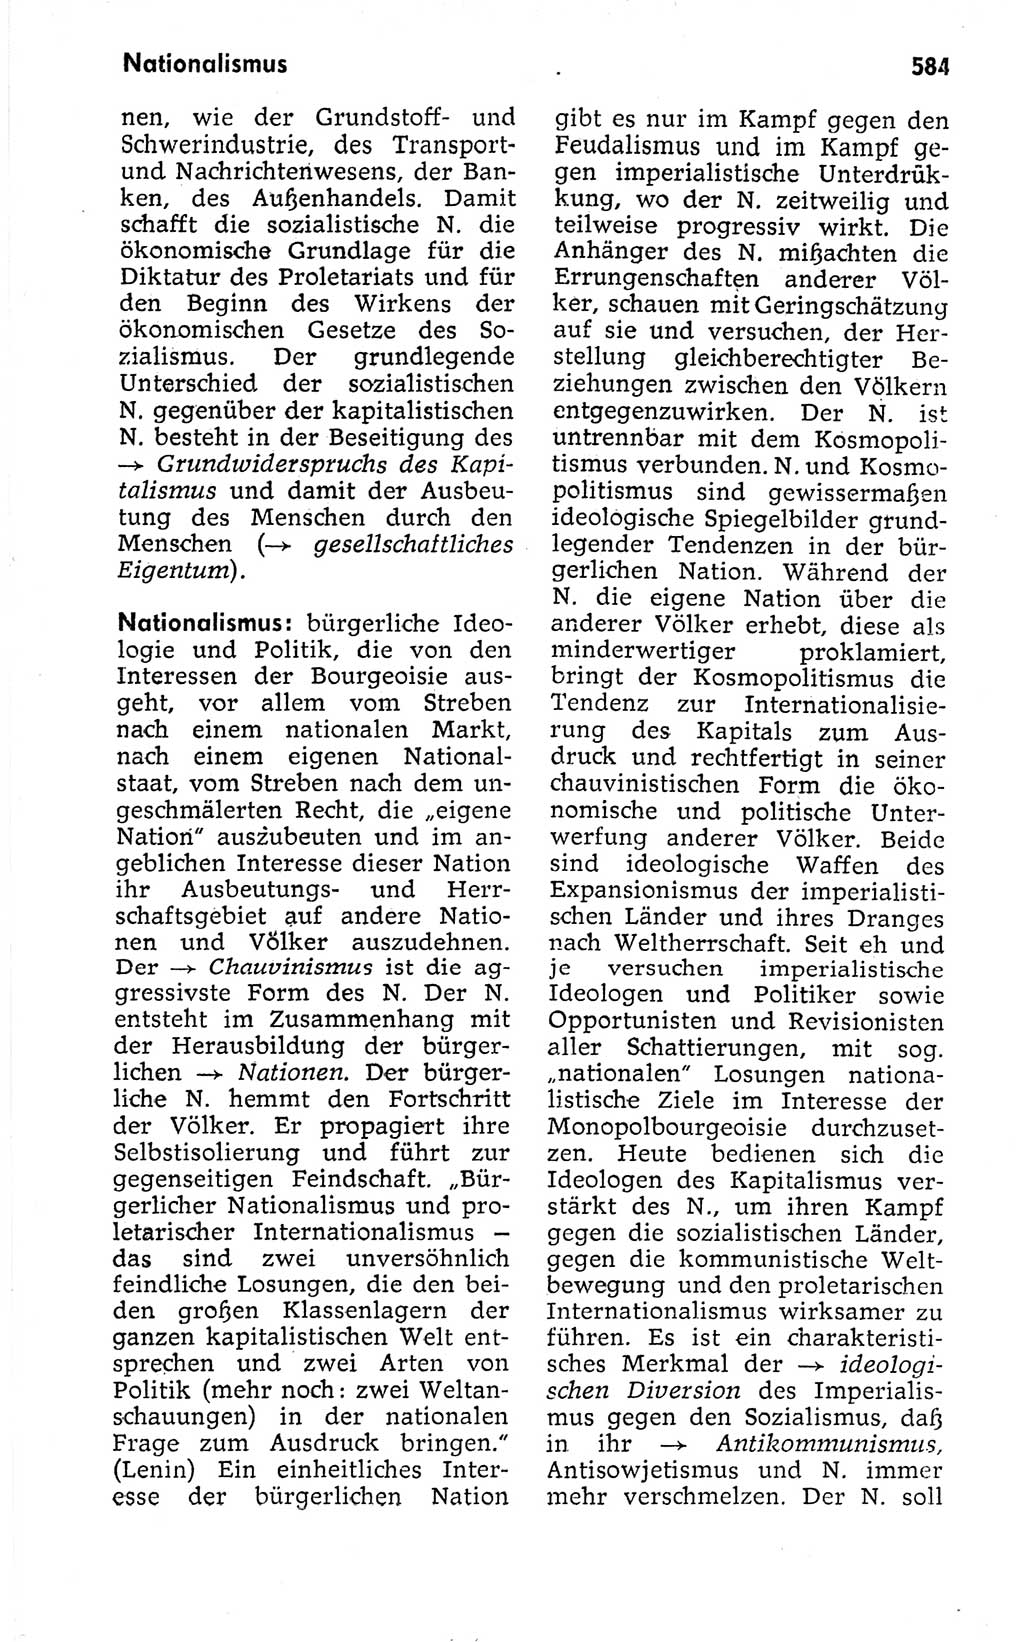 Kleines politisches Wörterbuch [Deutsche Demokratische Republik (DDR)] 1973, Seite 584 (Kl. pol. Wb. DDR 1973, S. 584)